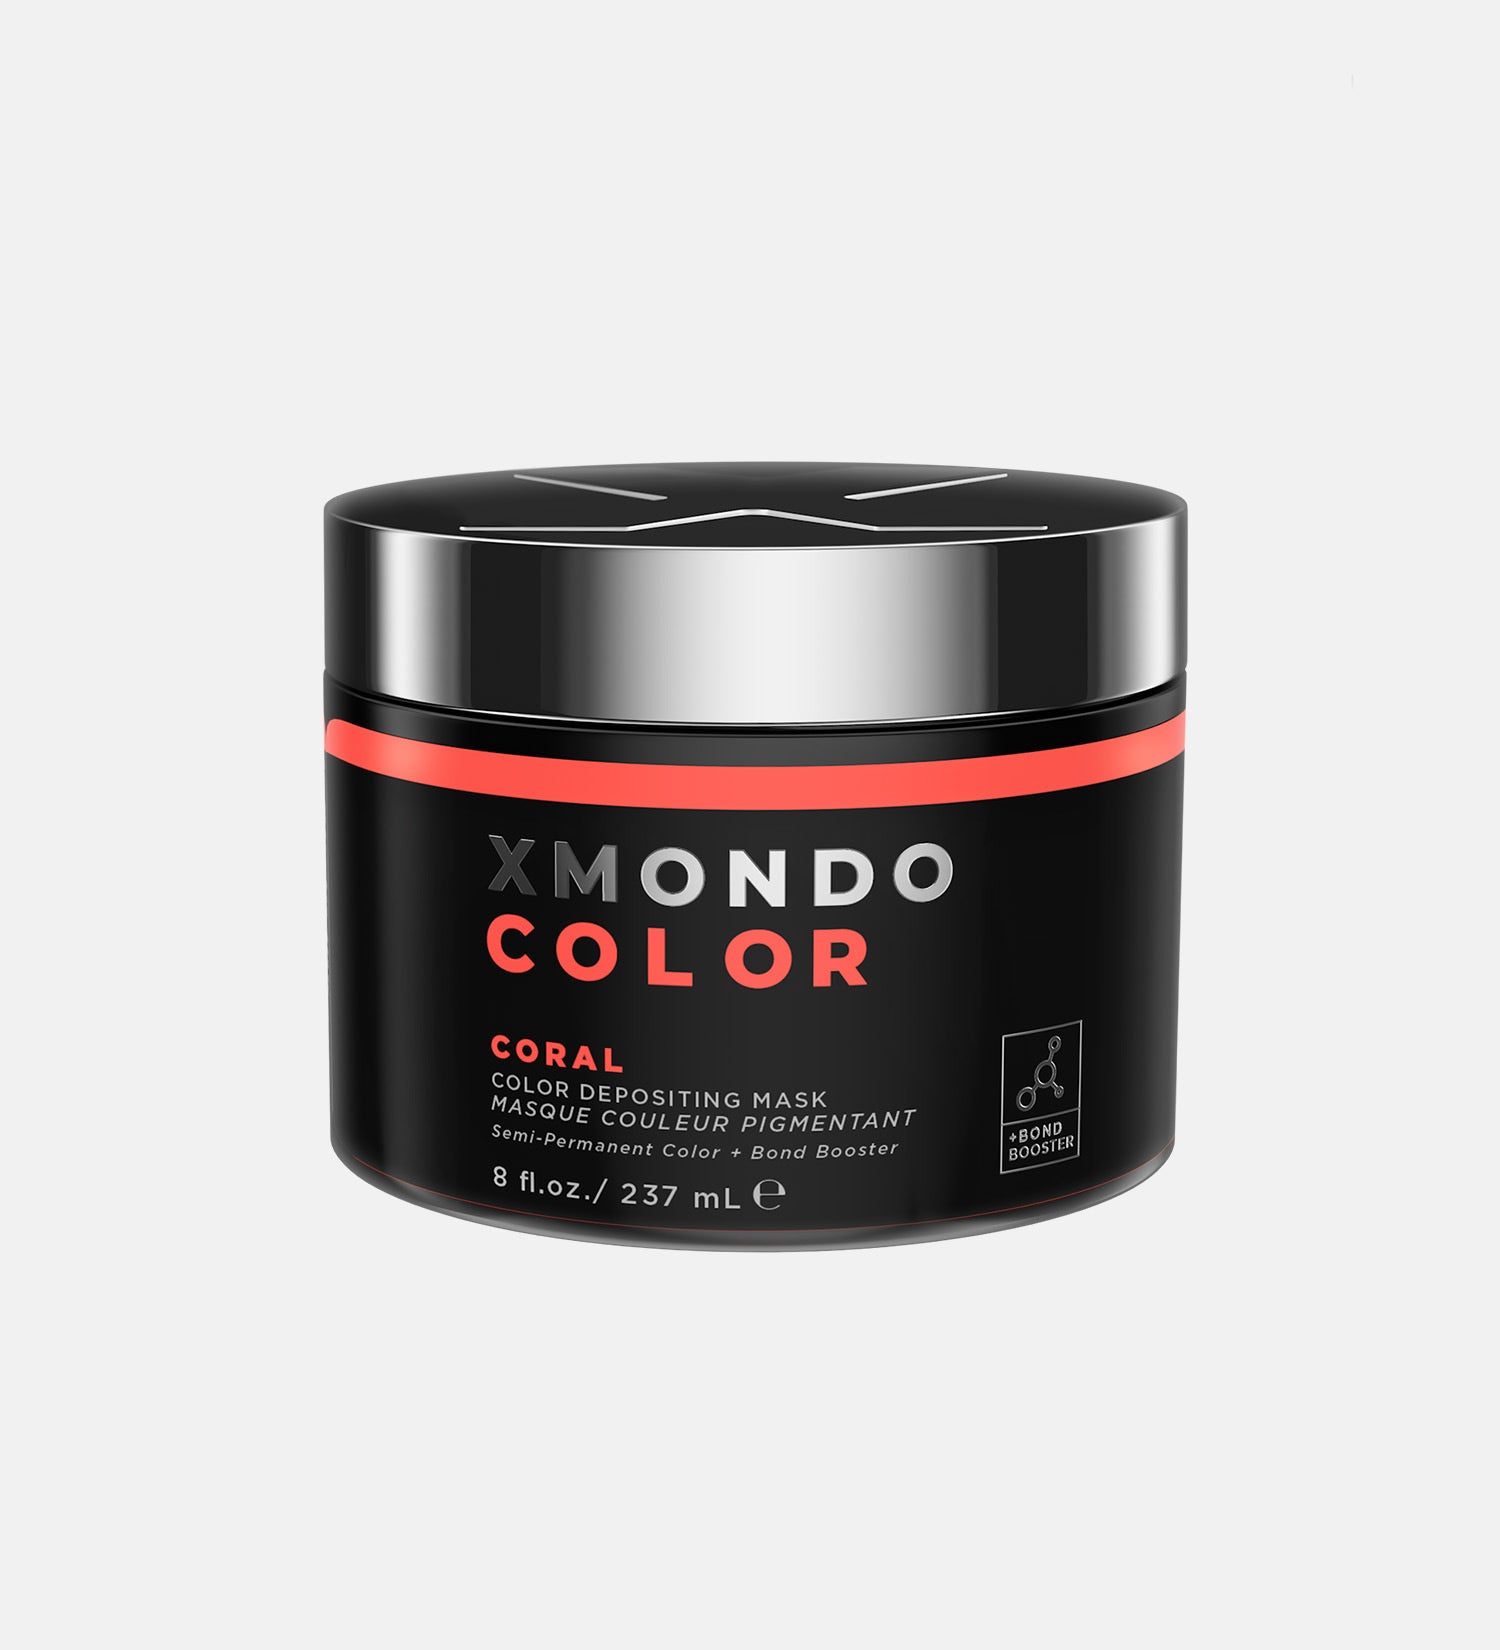 Jar of XMONDO Color coral hair healing color